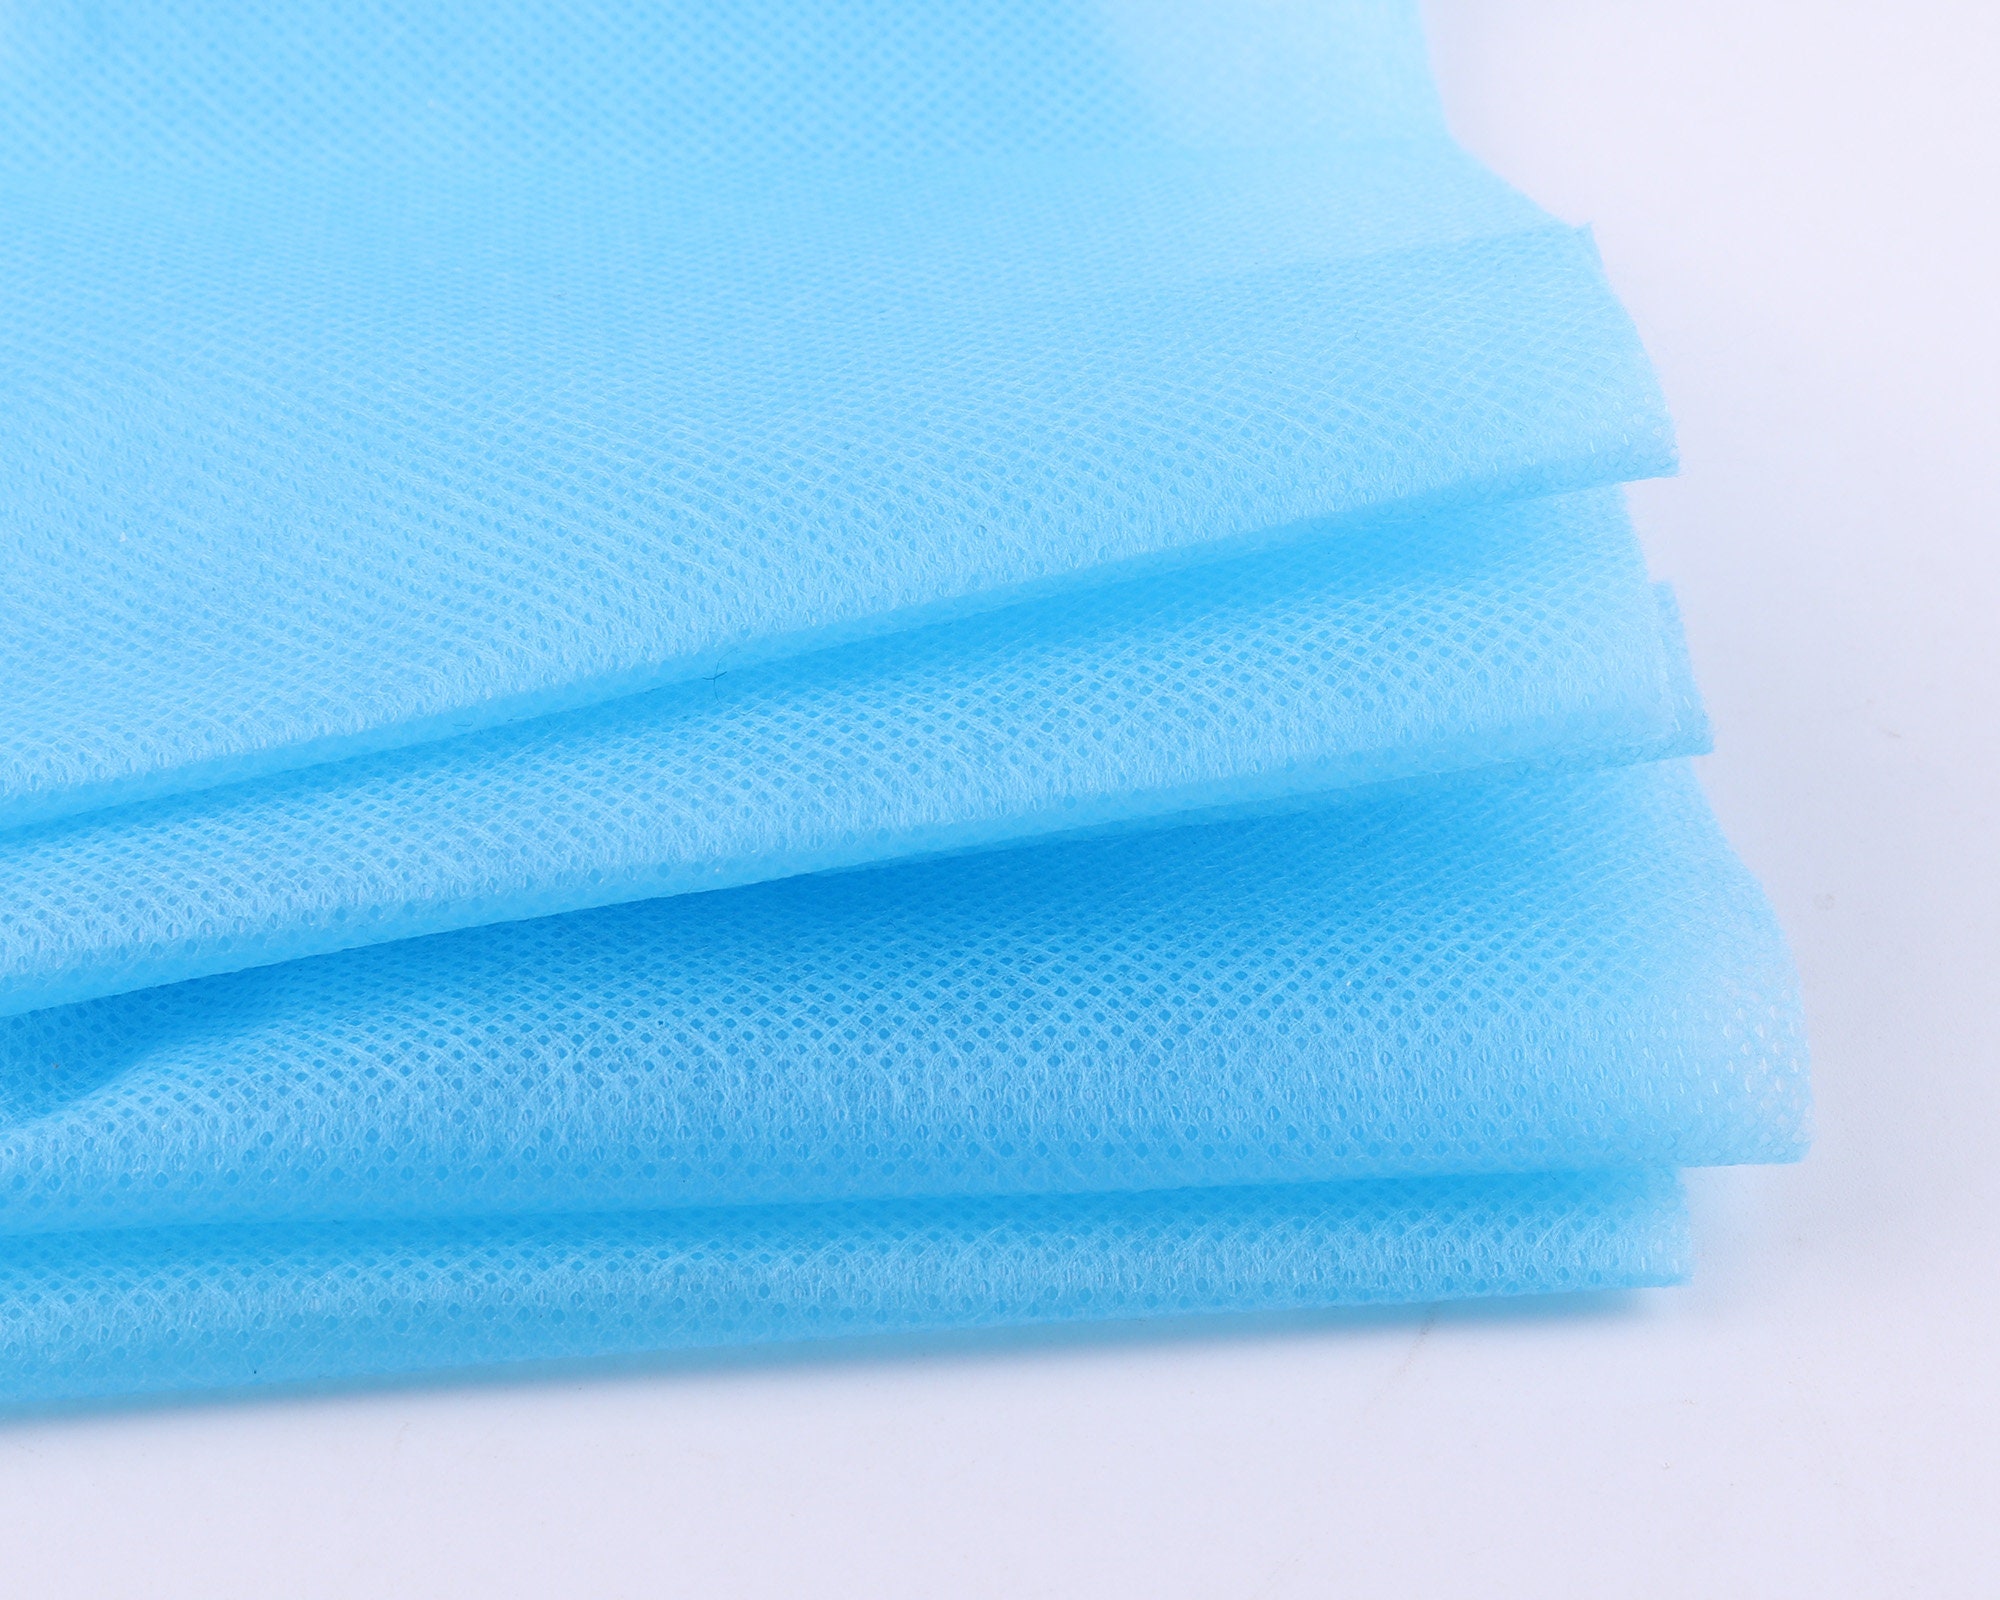 Blue Non Woven Fabricpolypropylene Fabric Non Woven Spunbond | Etsy